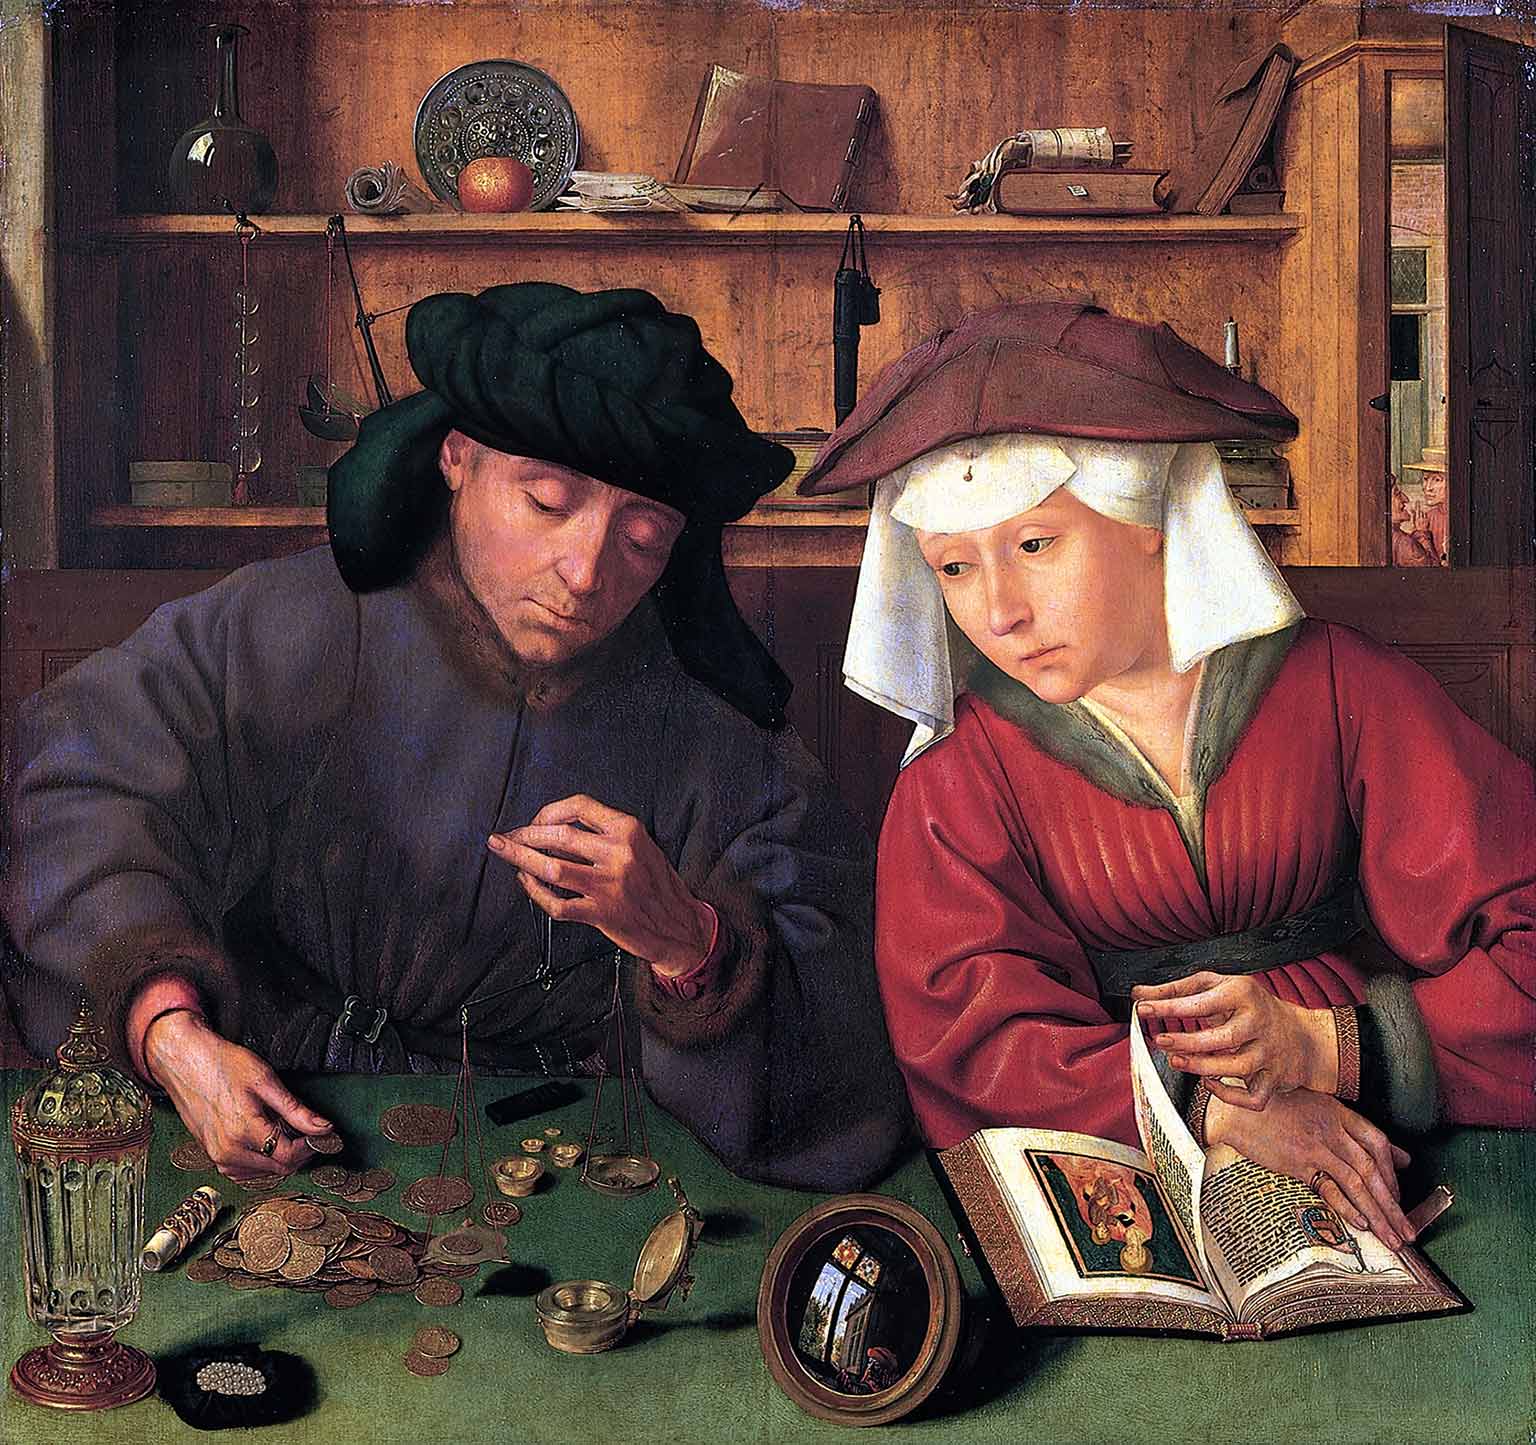 De geldwisselaar en zijn vrouw, schilderij uit 1514 van Quinten Massys in het Louvre, Parijs